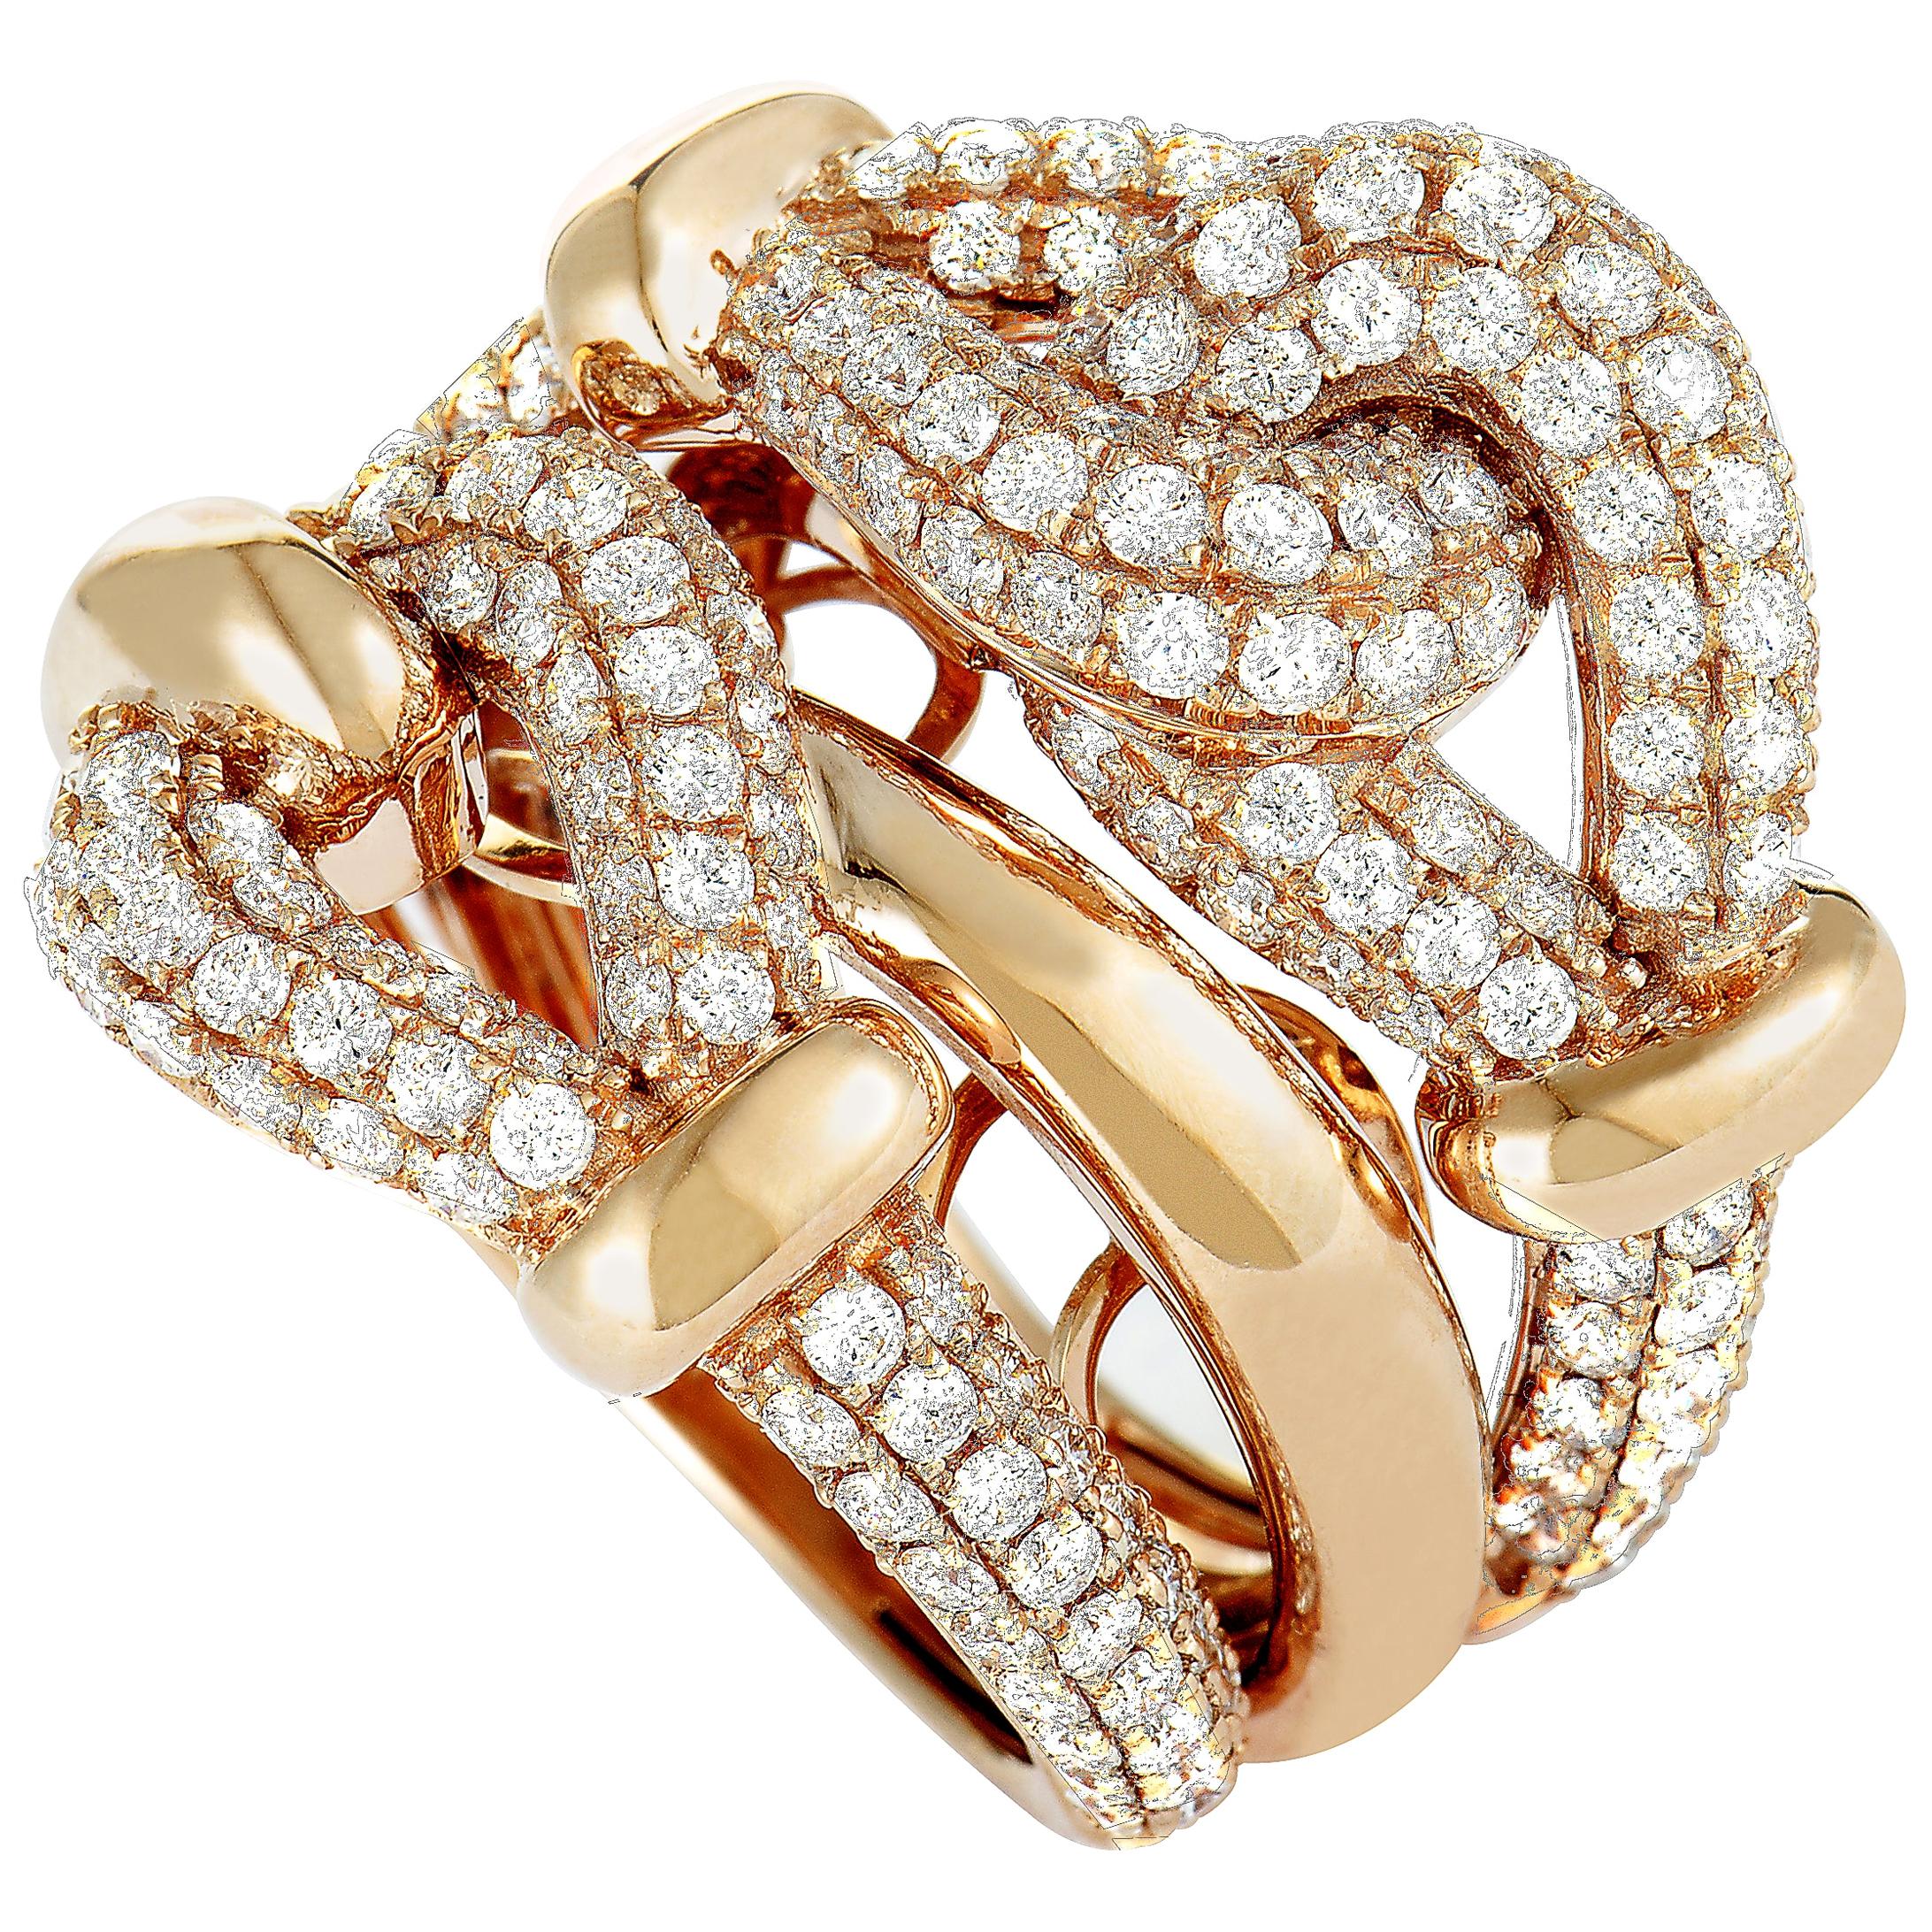 LB Exclusive 18 Karat Rose Gold Diamond Pave Multi-Band Ring